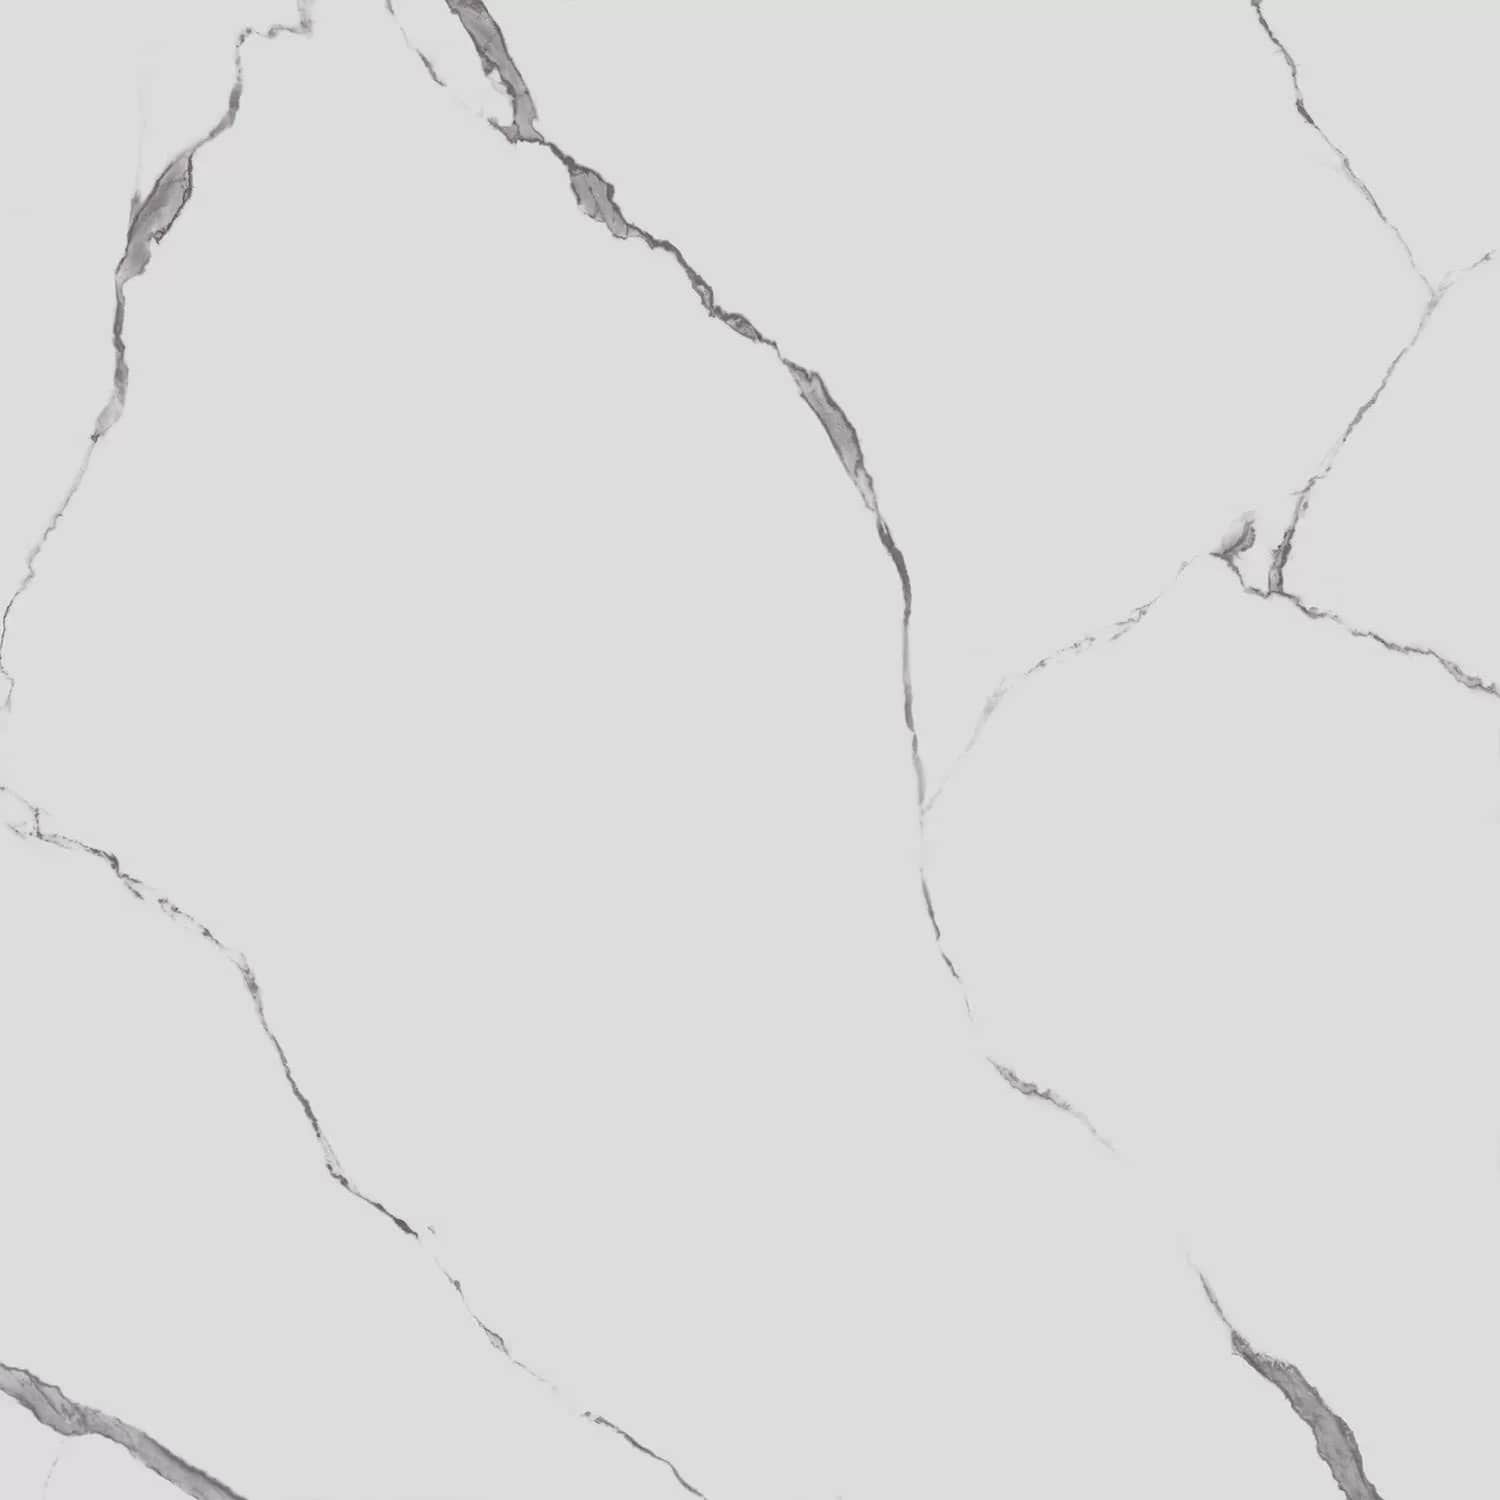 SG015400R Керамогранит Монте Тиберио белый матовый обрезной 119,5x119,5 Kerama Marazzi